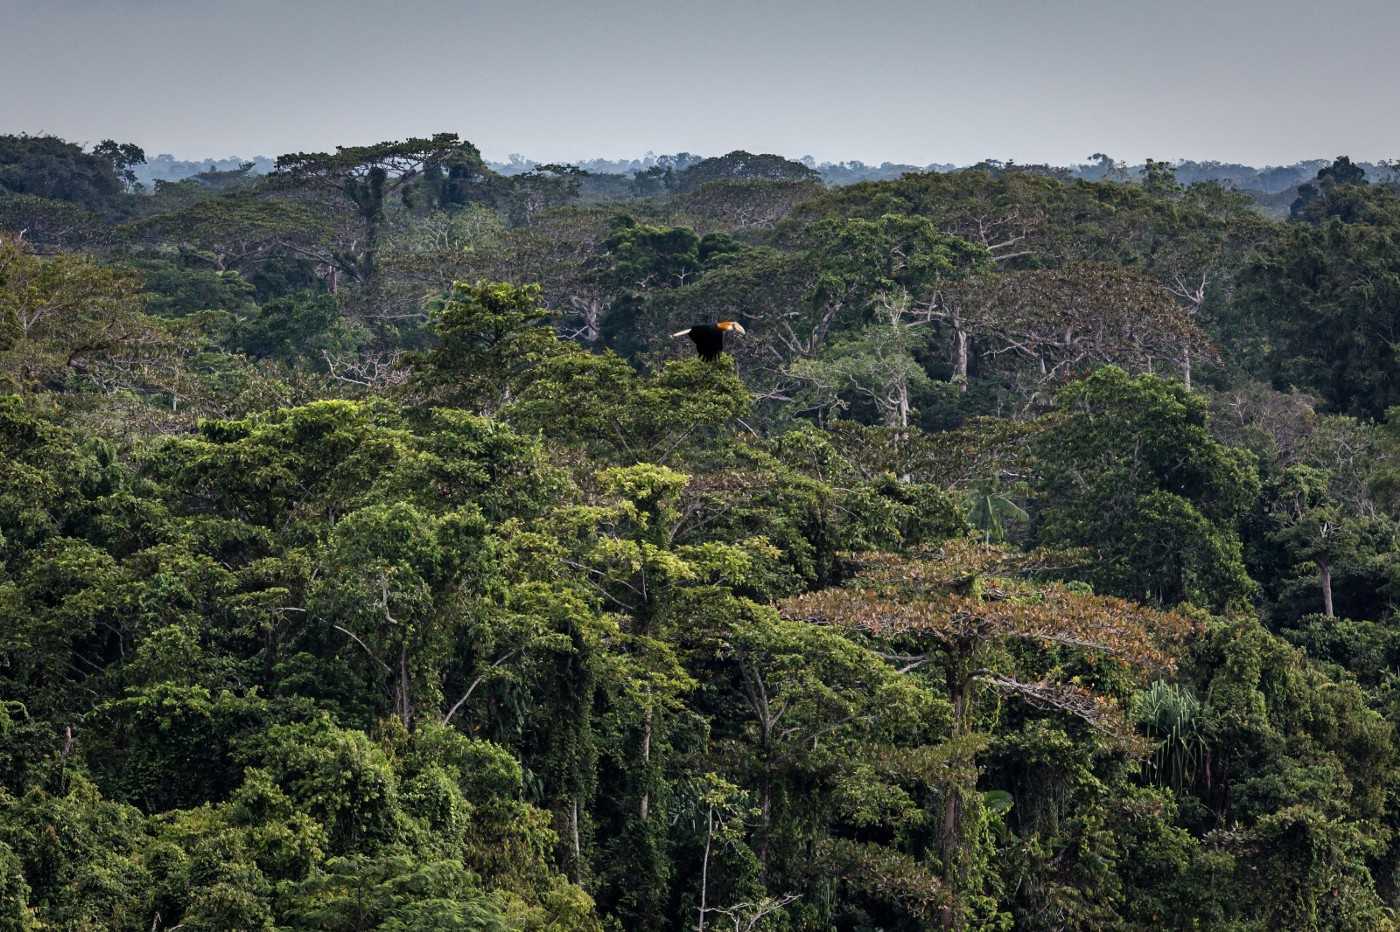 Seekor burung enggang terbang di atas tajuk hutan hujan di Papua.